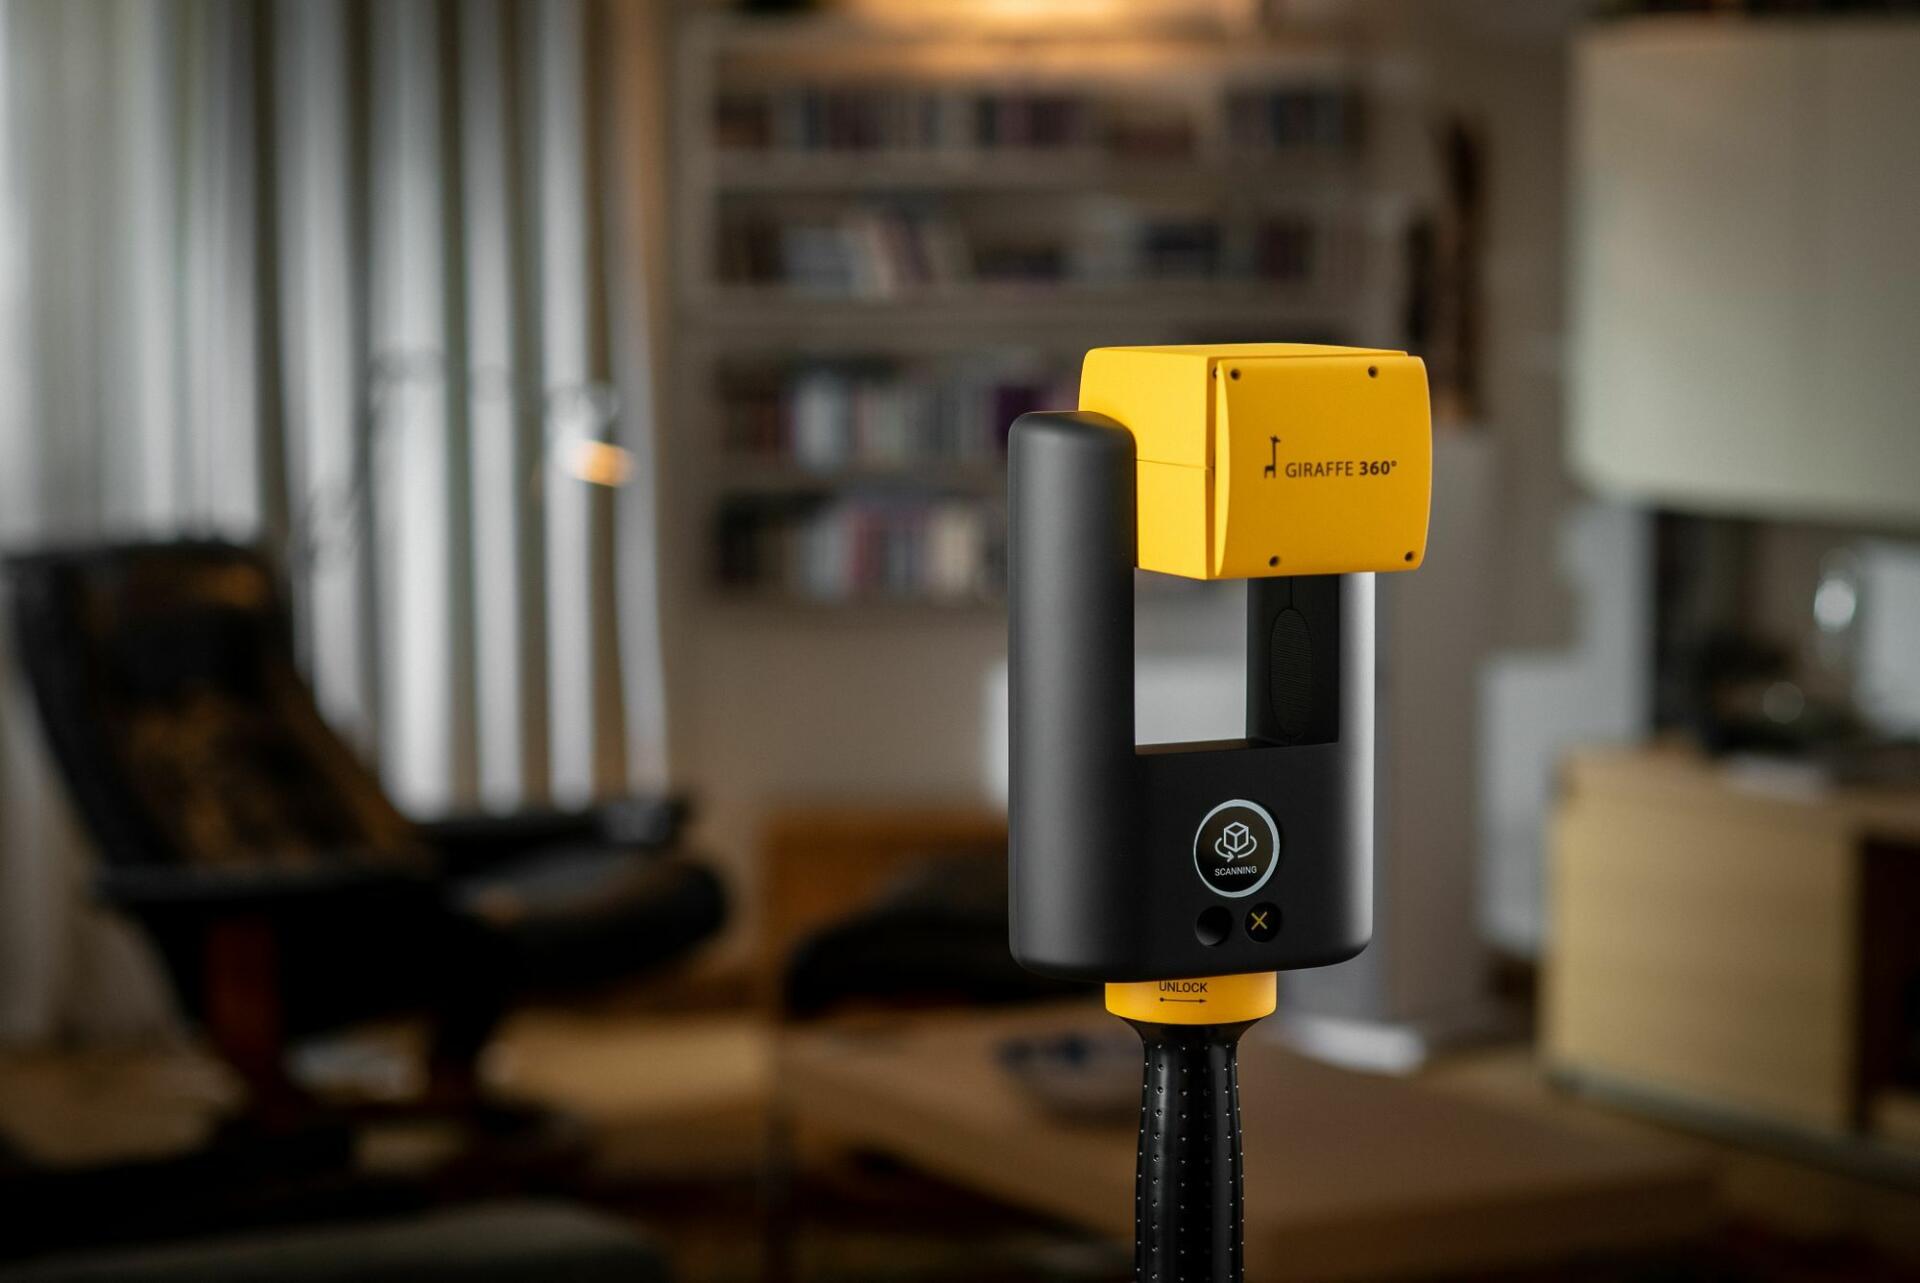 Giraffe 360 camera in use inside a living room